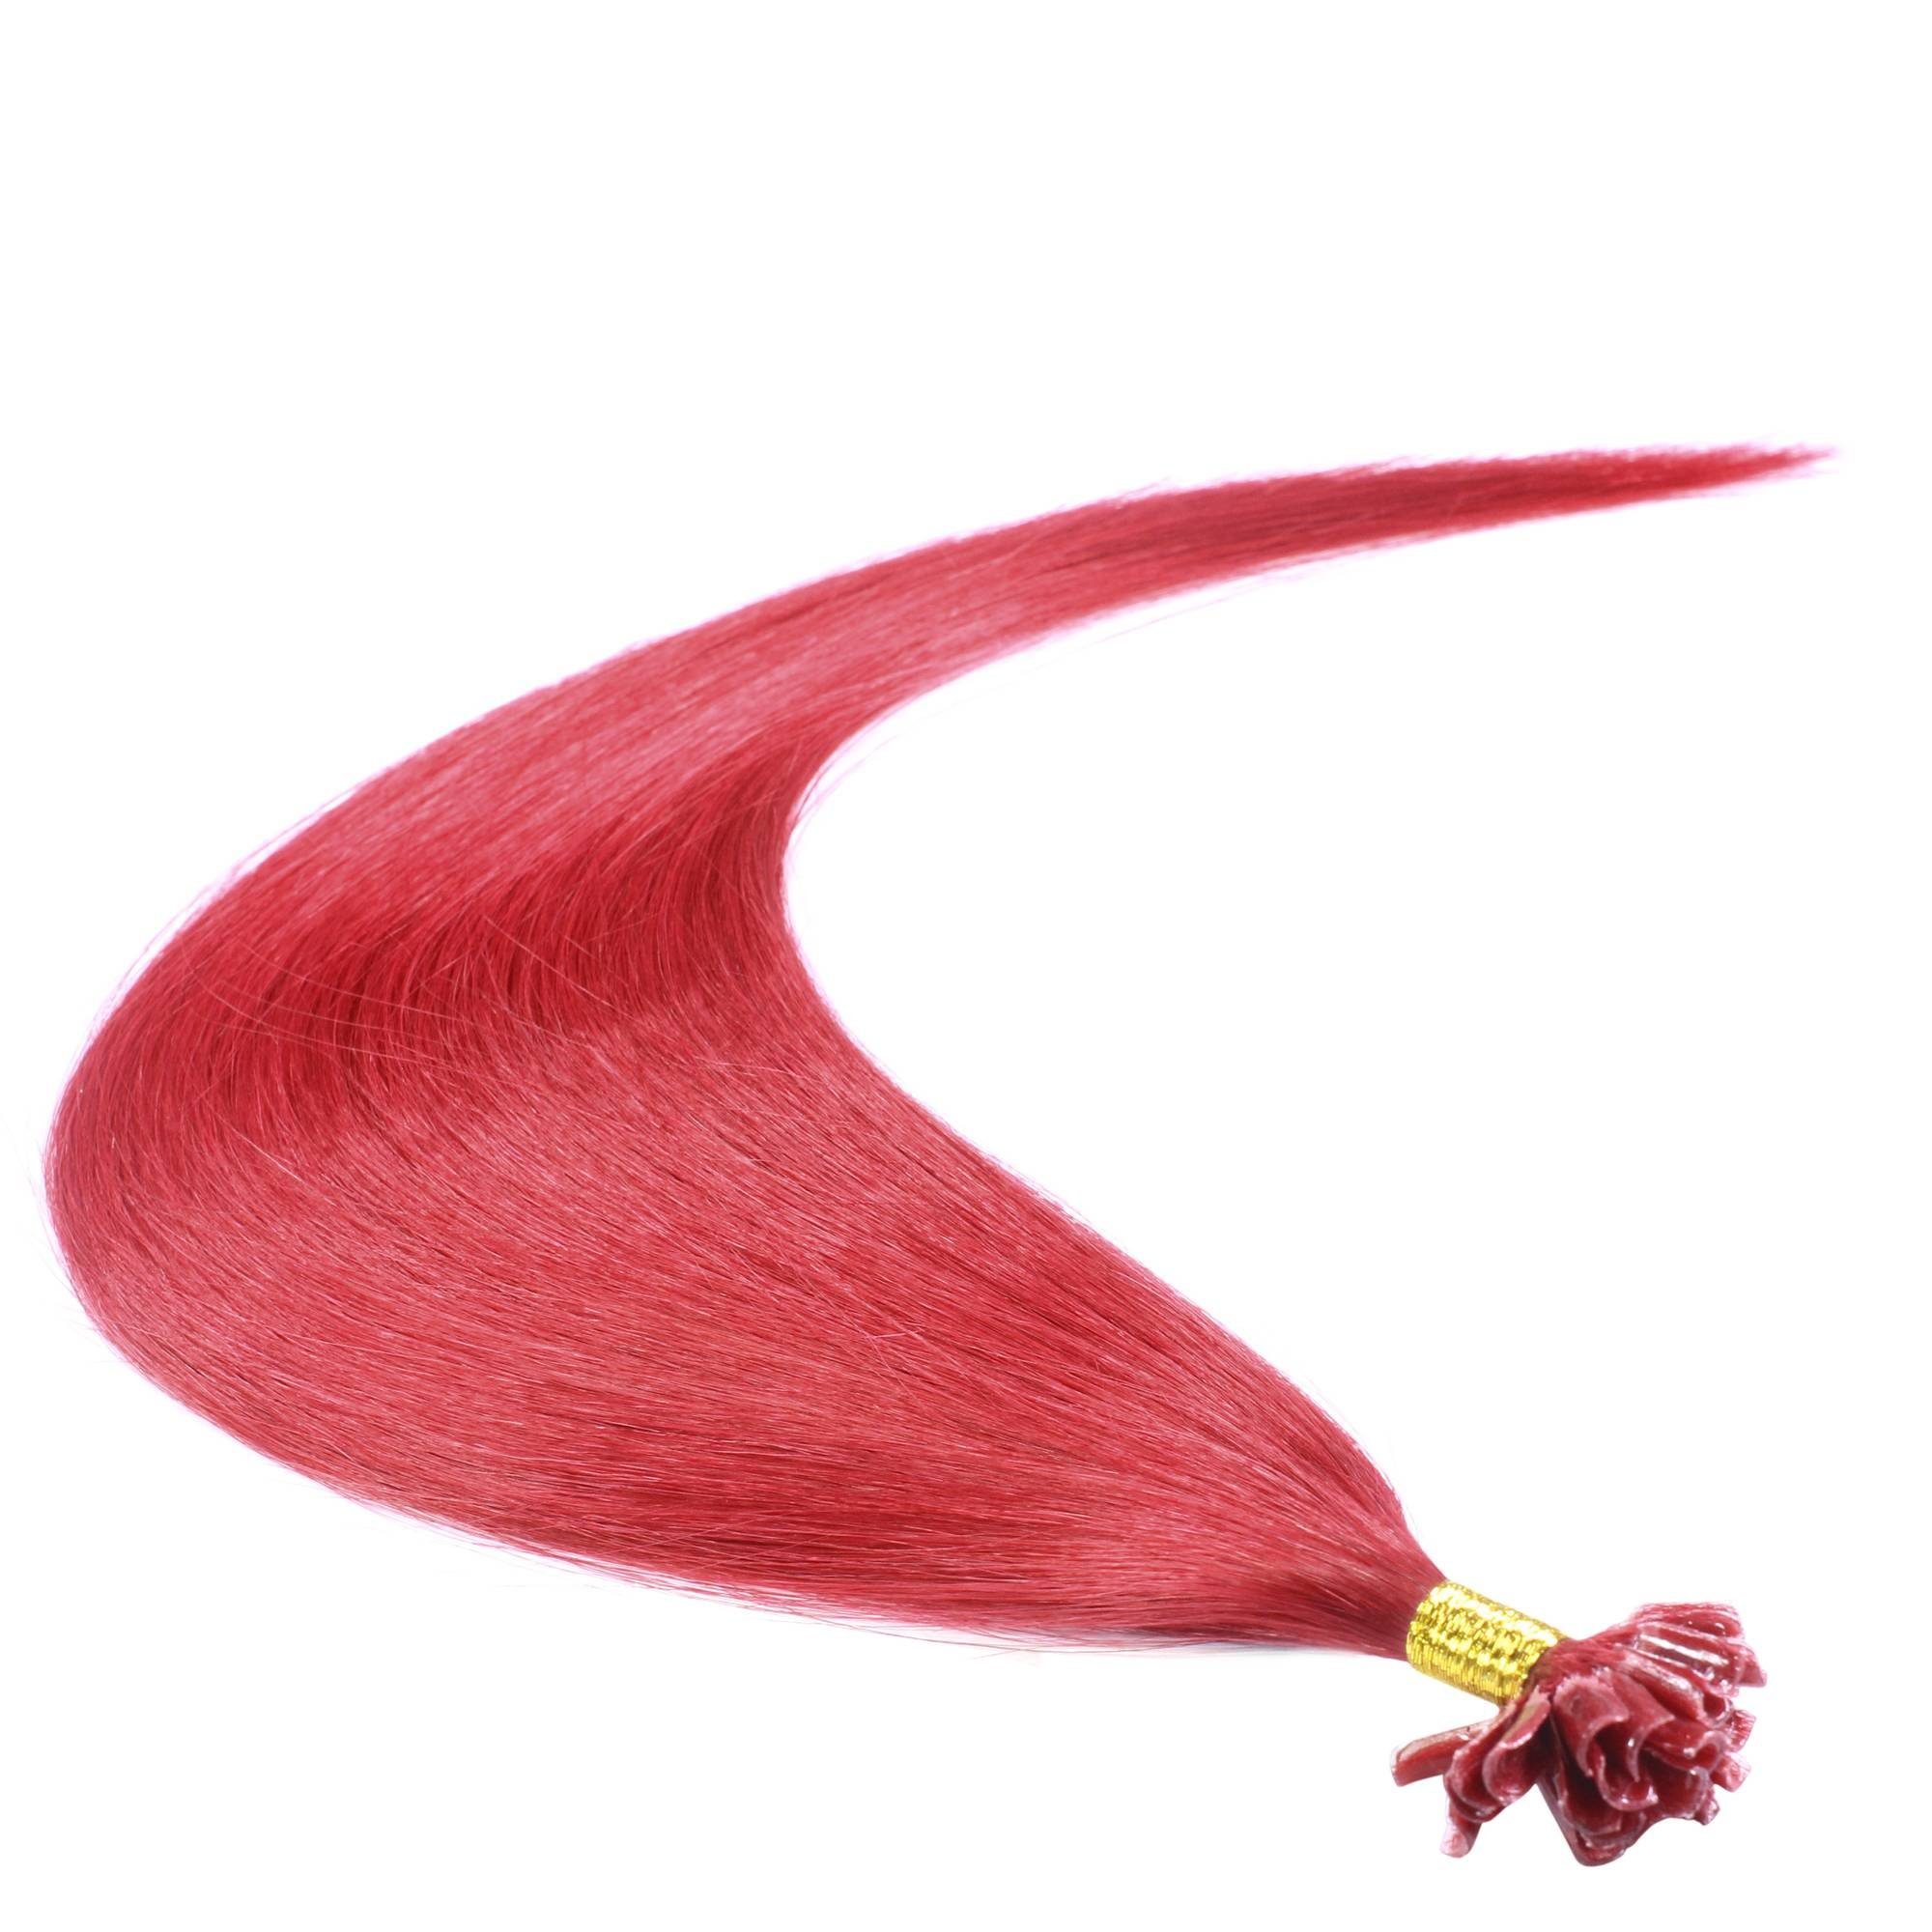 hair2heart Echthaar-Extension Premium Bonding Extensions #0/44 40cm Rot-Intensiv